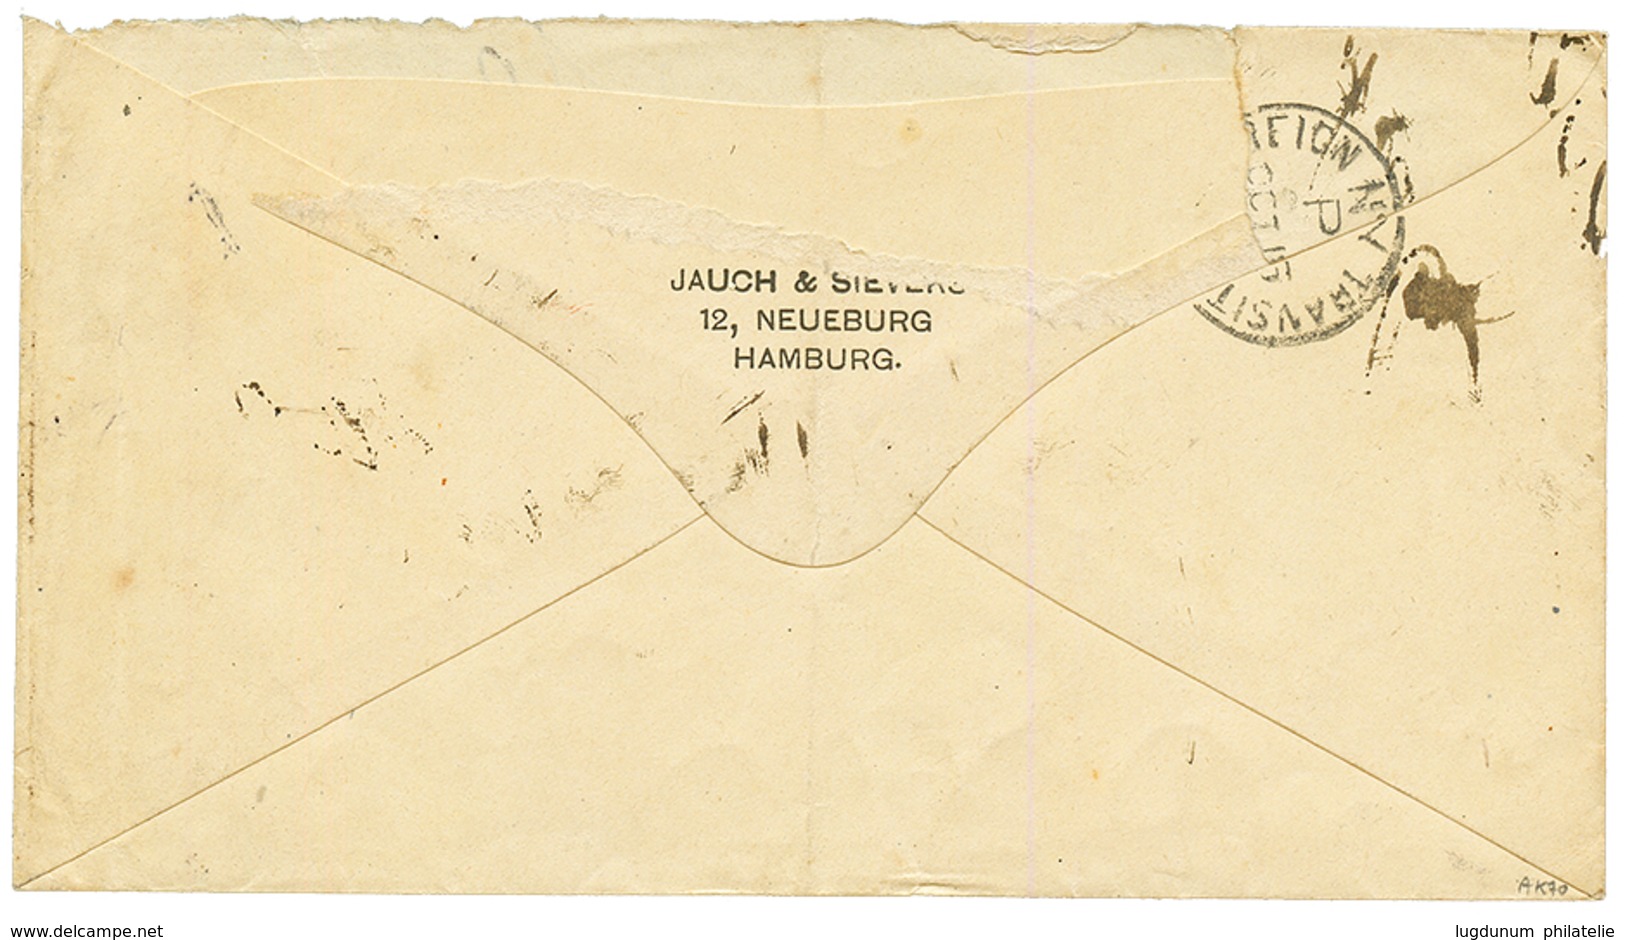 CURACAO : 1892 GERMANY 20pf Canc. HAMBURG On Envelope To LA GUAYRA (VENEZUELA) Redirected To CURACAO. The Envelope Was T - Niederländische Antillen, Curaçao, Aruba